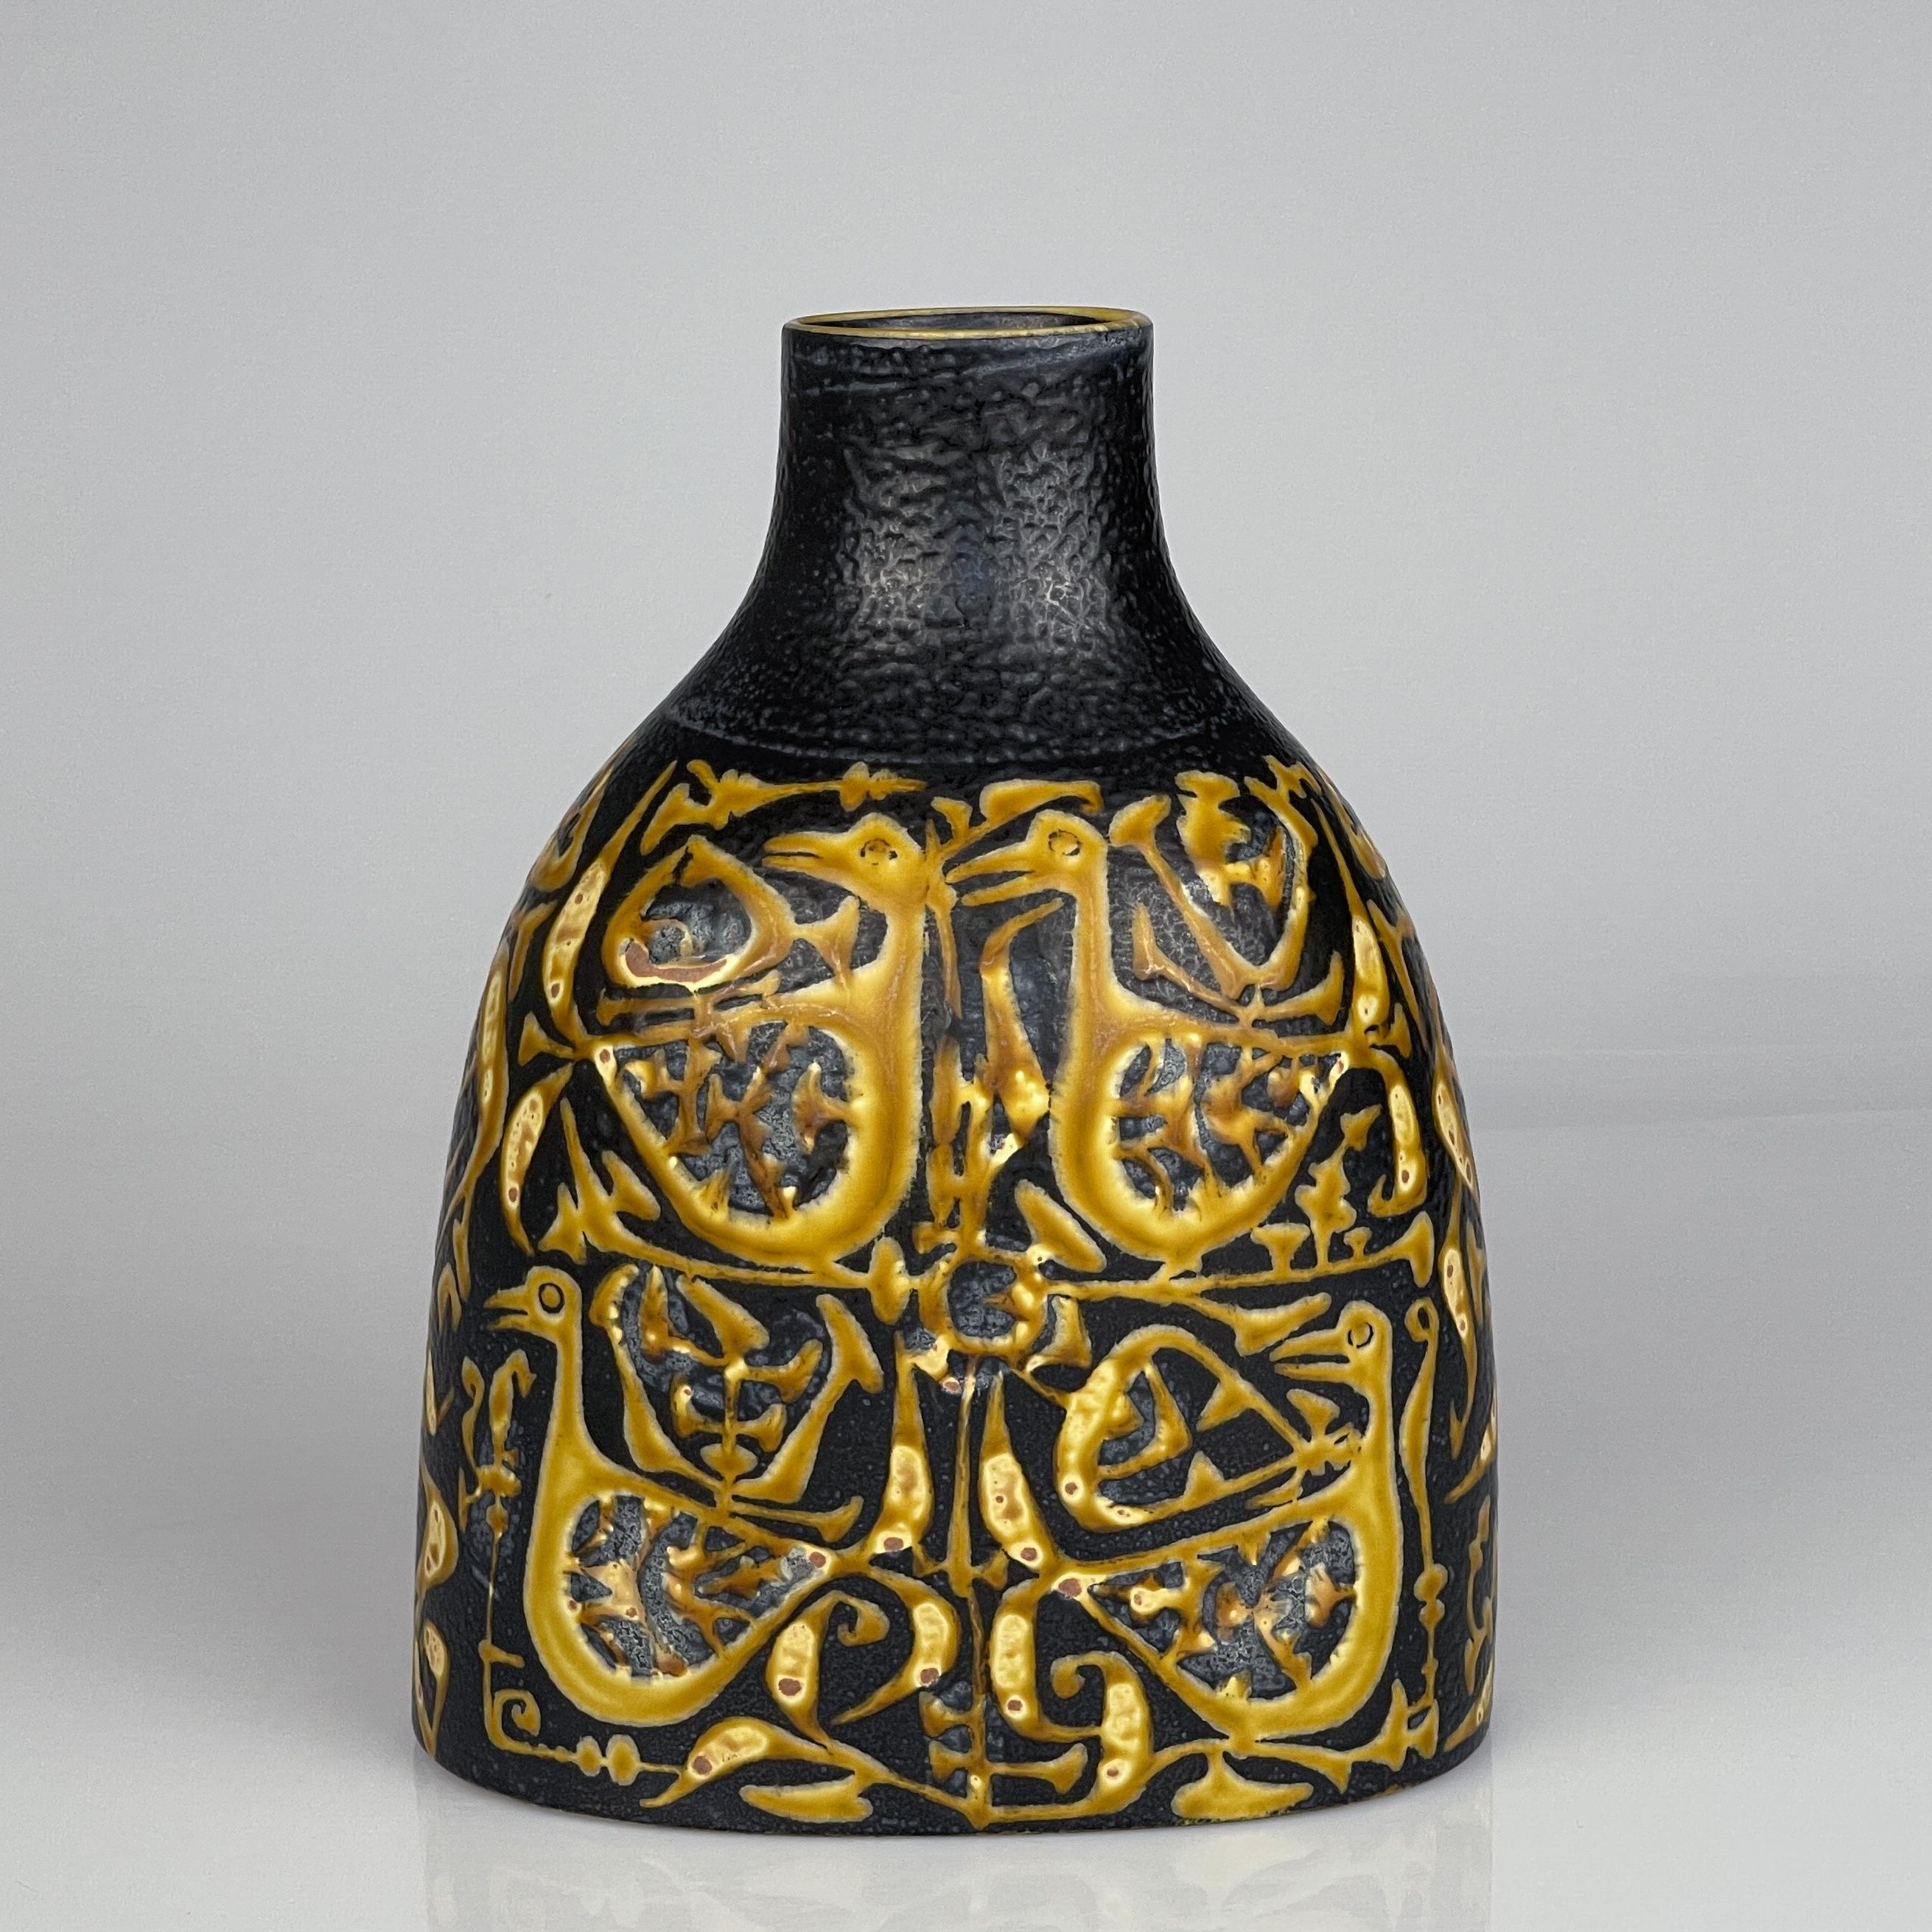 Skandinavische Moderne Nils Thorsson Steingut Baca Vase Aluminia Dänemark ca. 1965

Beschreibung
Eine Vase aus Steinzeug mit gelben stilisierten Vögeln auf einer braunen glasierten Oberfläche, die sich gut anfühlt.

Sowohl das Dekor (Modell 714) als